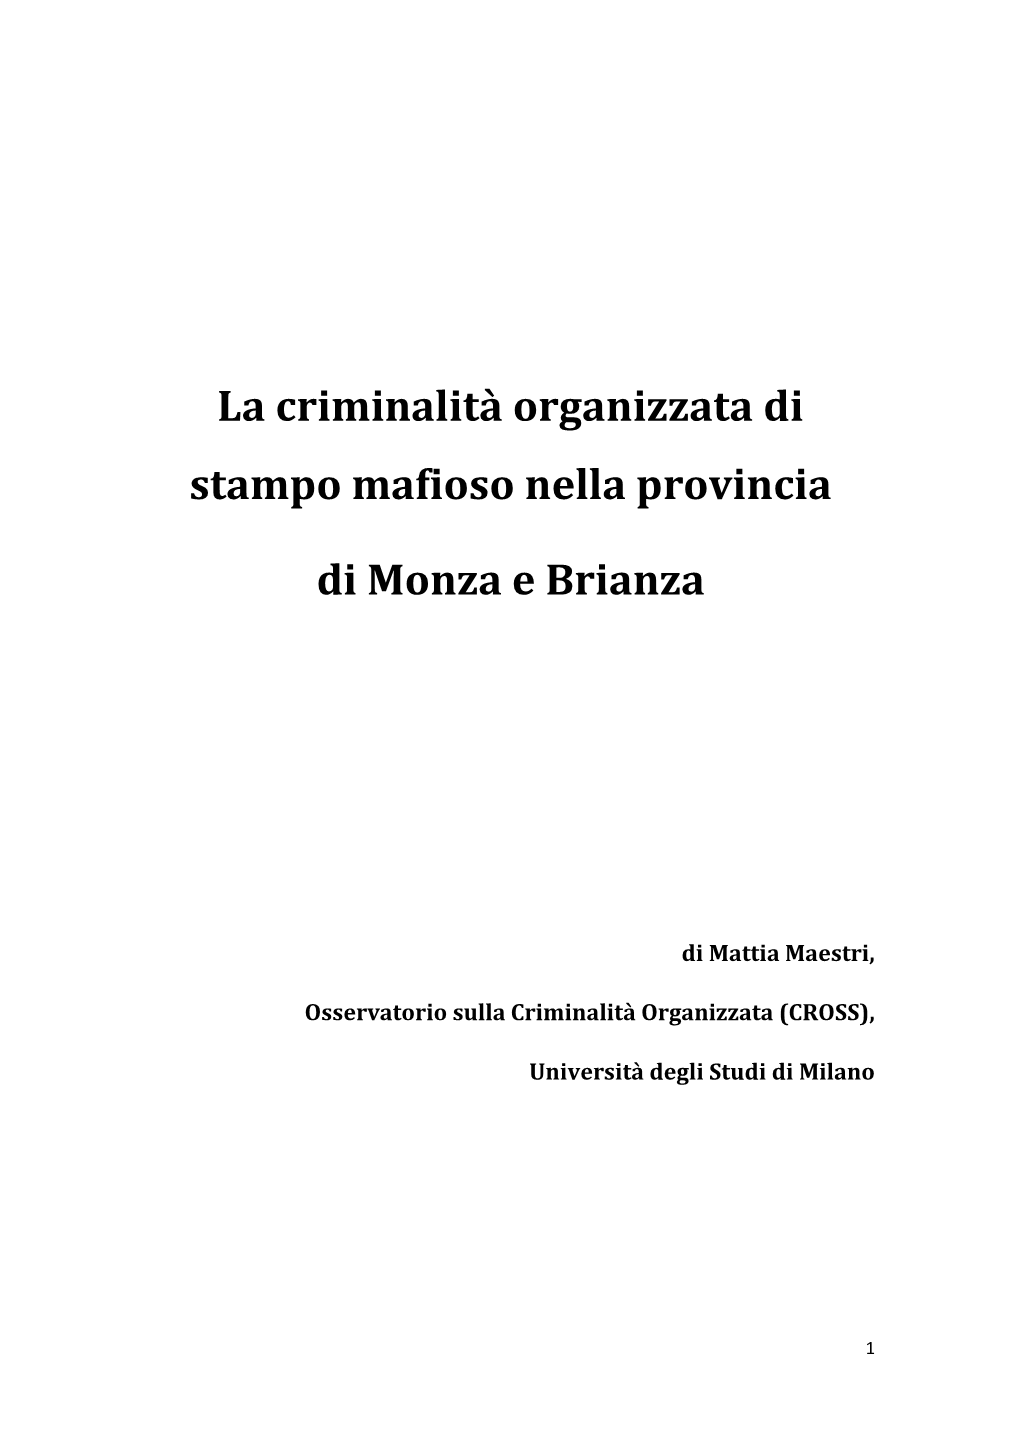 La Criminalità Organizzata Di Stampo Mafioso Nella Provincia Di Monza E Brianza: “La ‘Ndrangheta Lavora in Brianza Da Almeno Trent’Anni, Forse Di Più